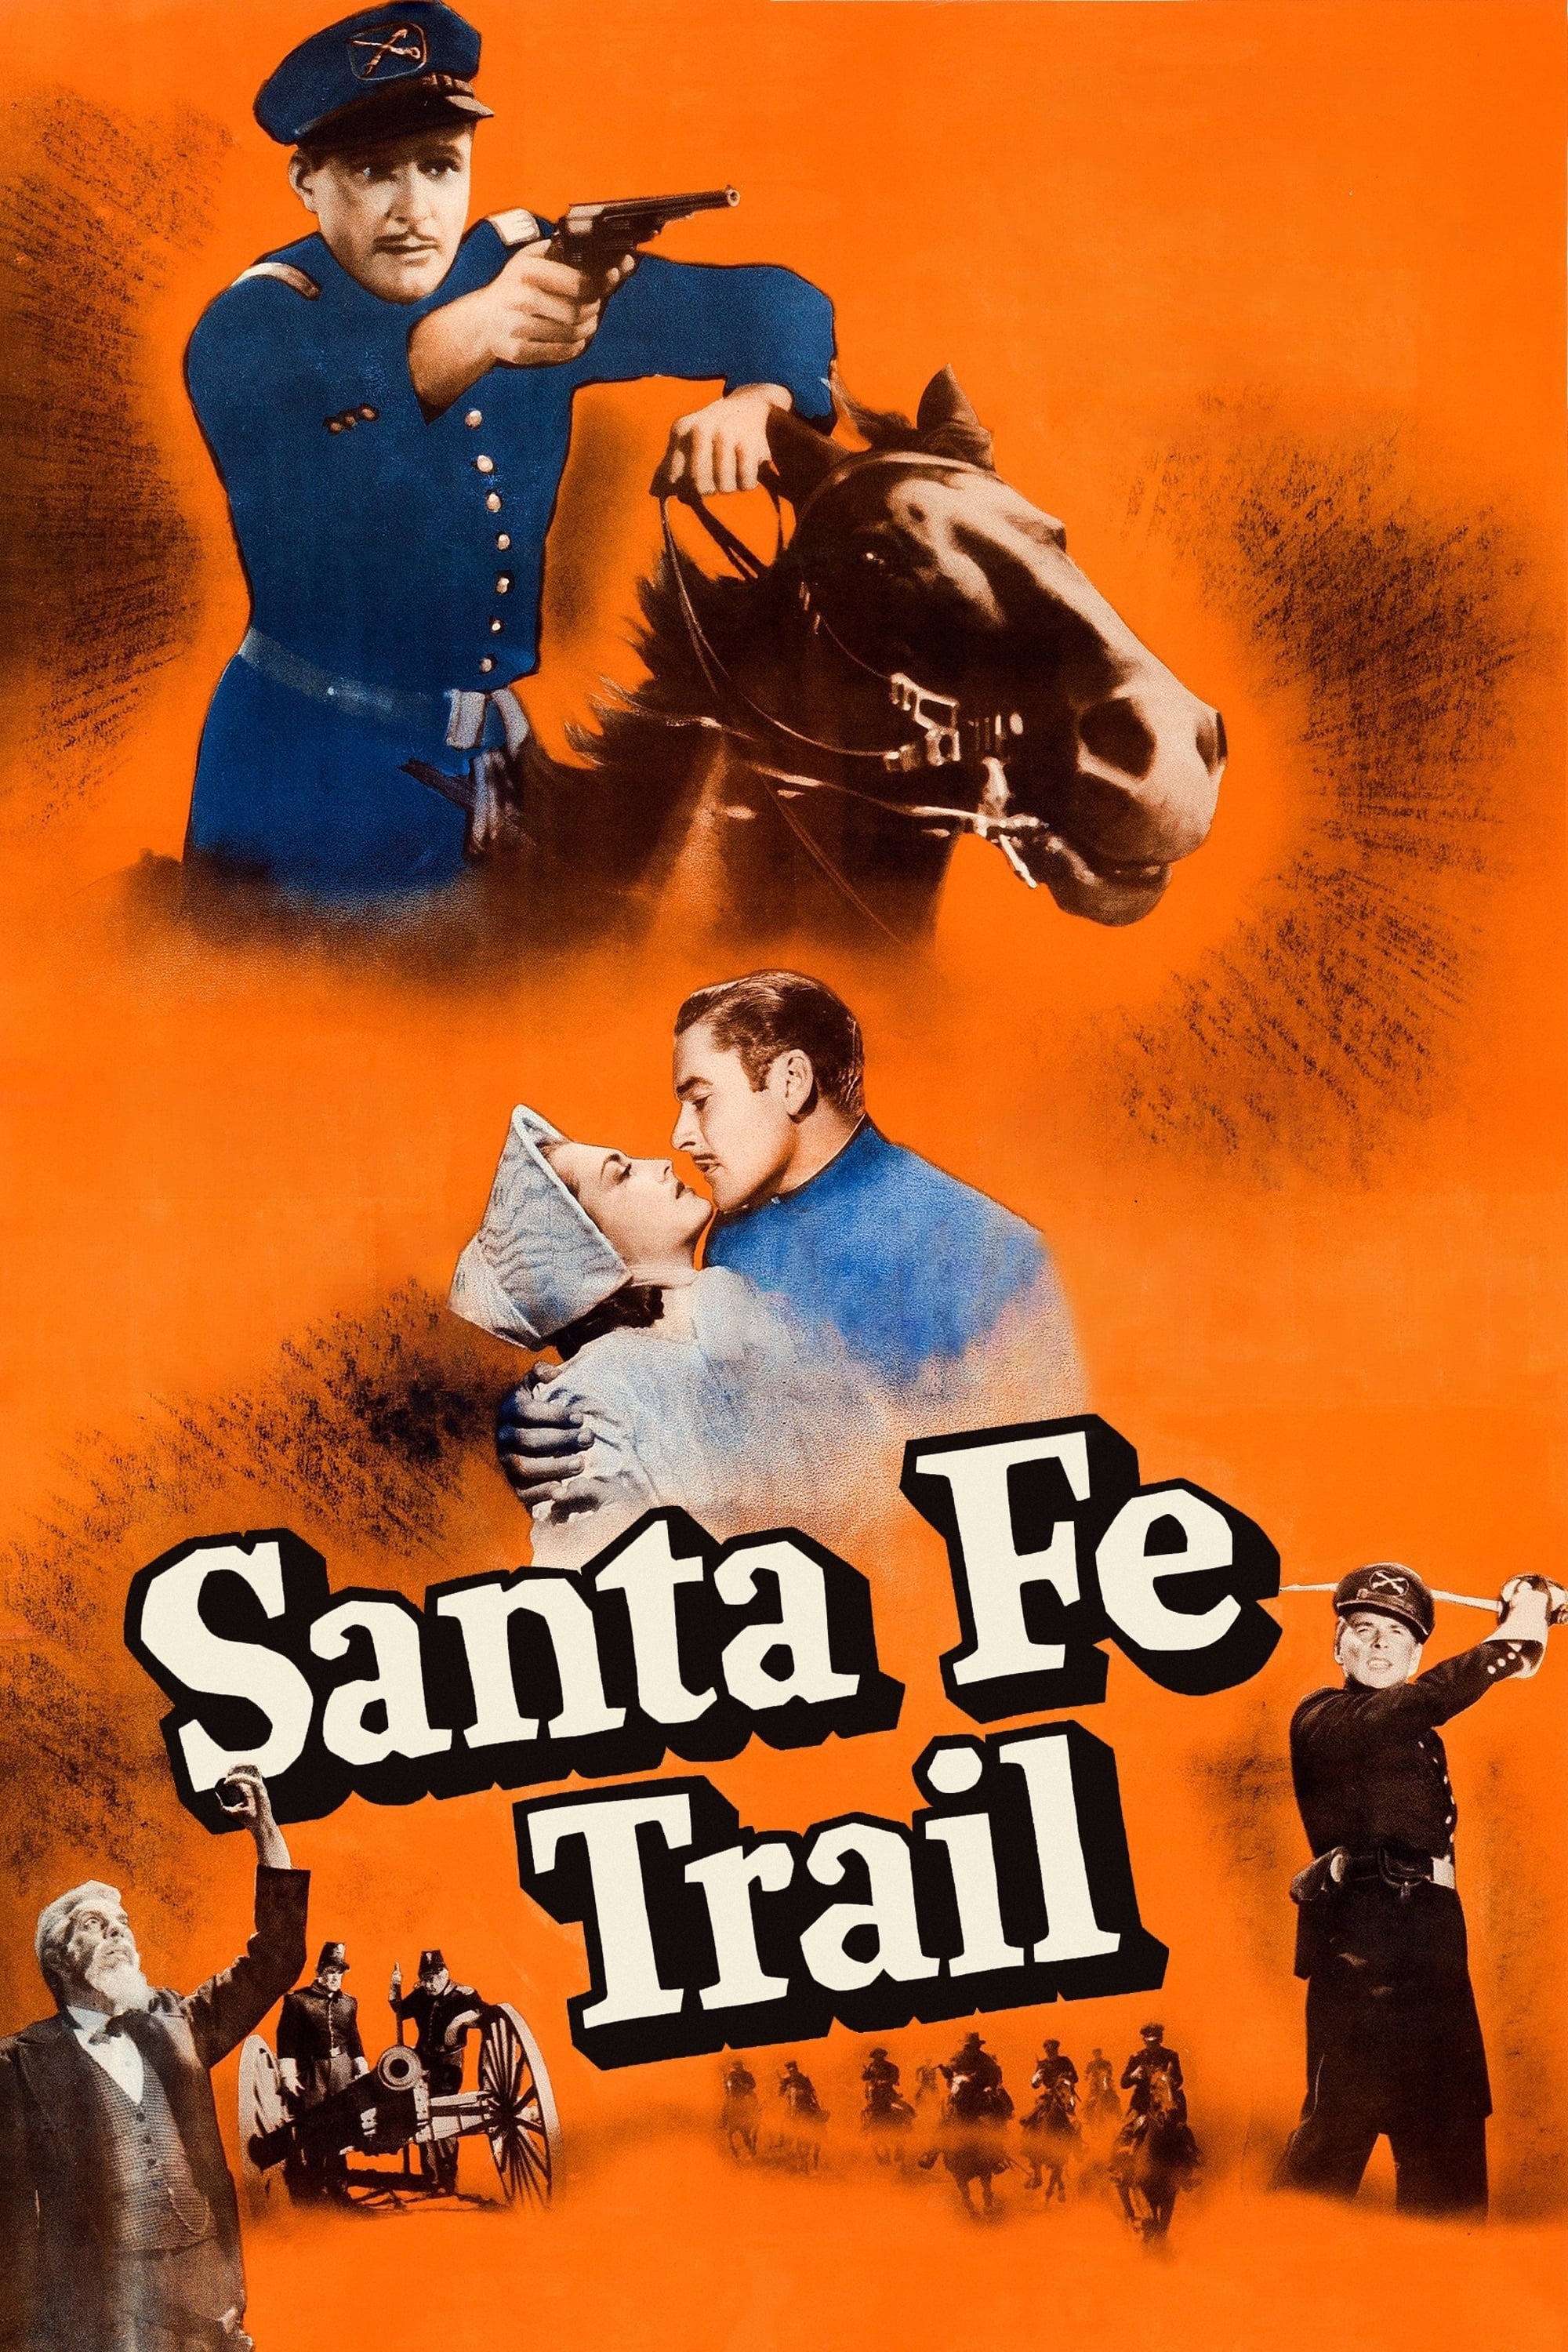 Santa Fe Trail - Santa Fe Trail